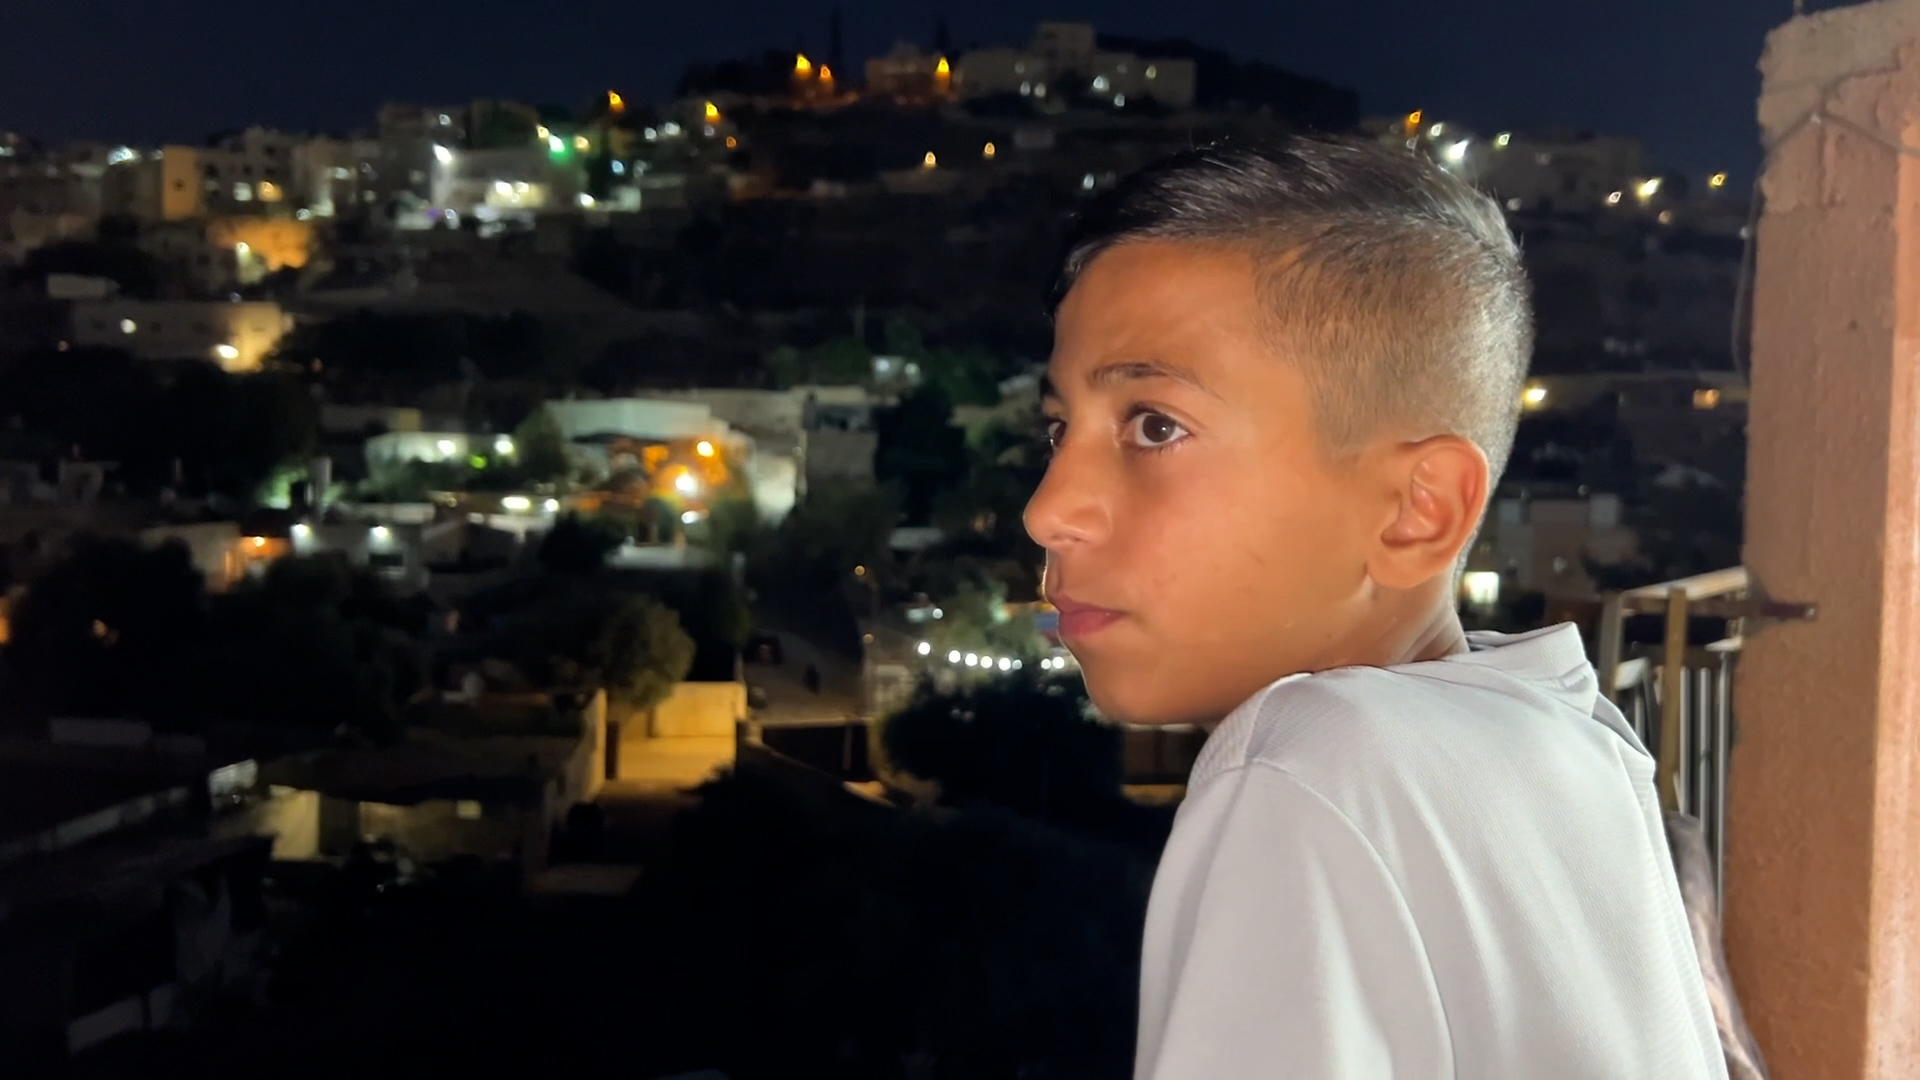 Enfant de Jérusalem en détention à domicile risque 3 ans de prison